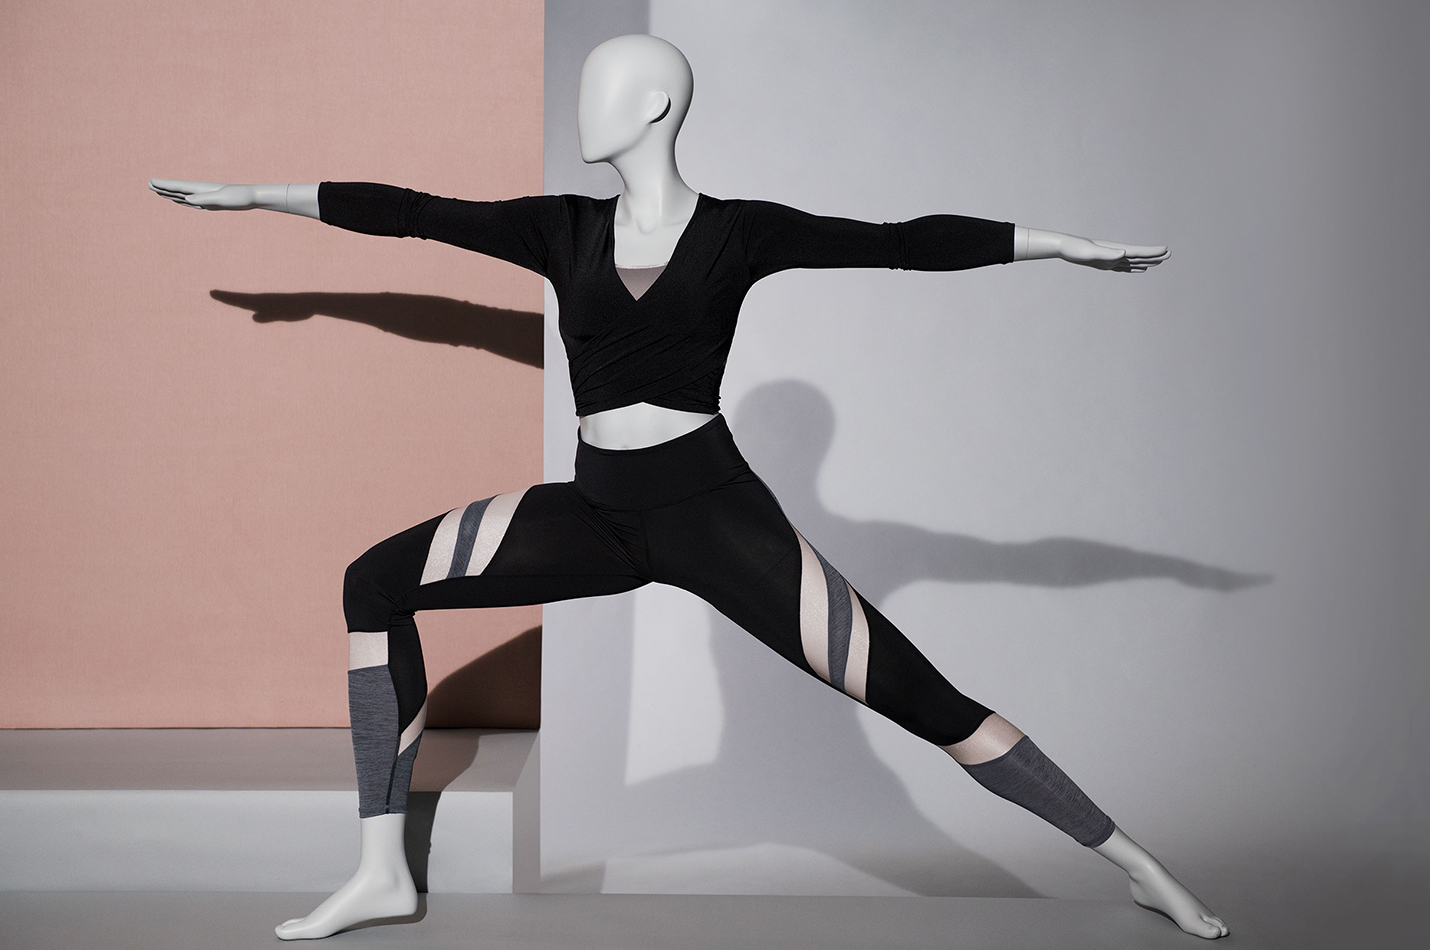 Yoga sport mannequins – Sport collection Hans Boodt Mannequins